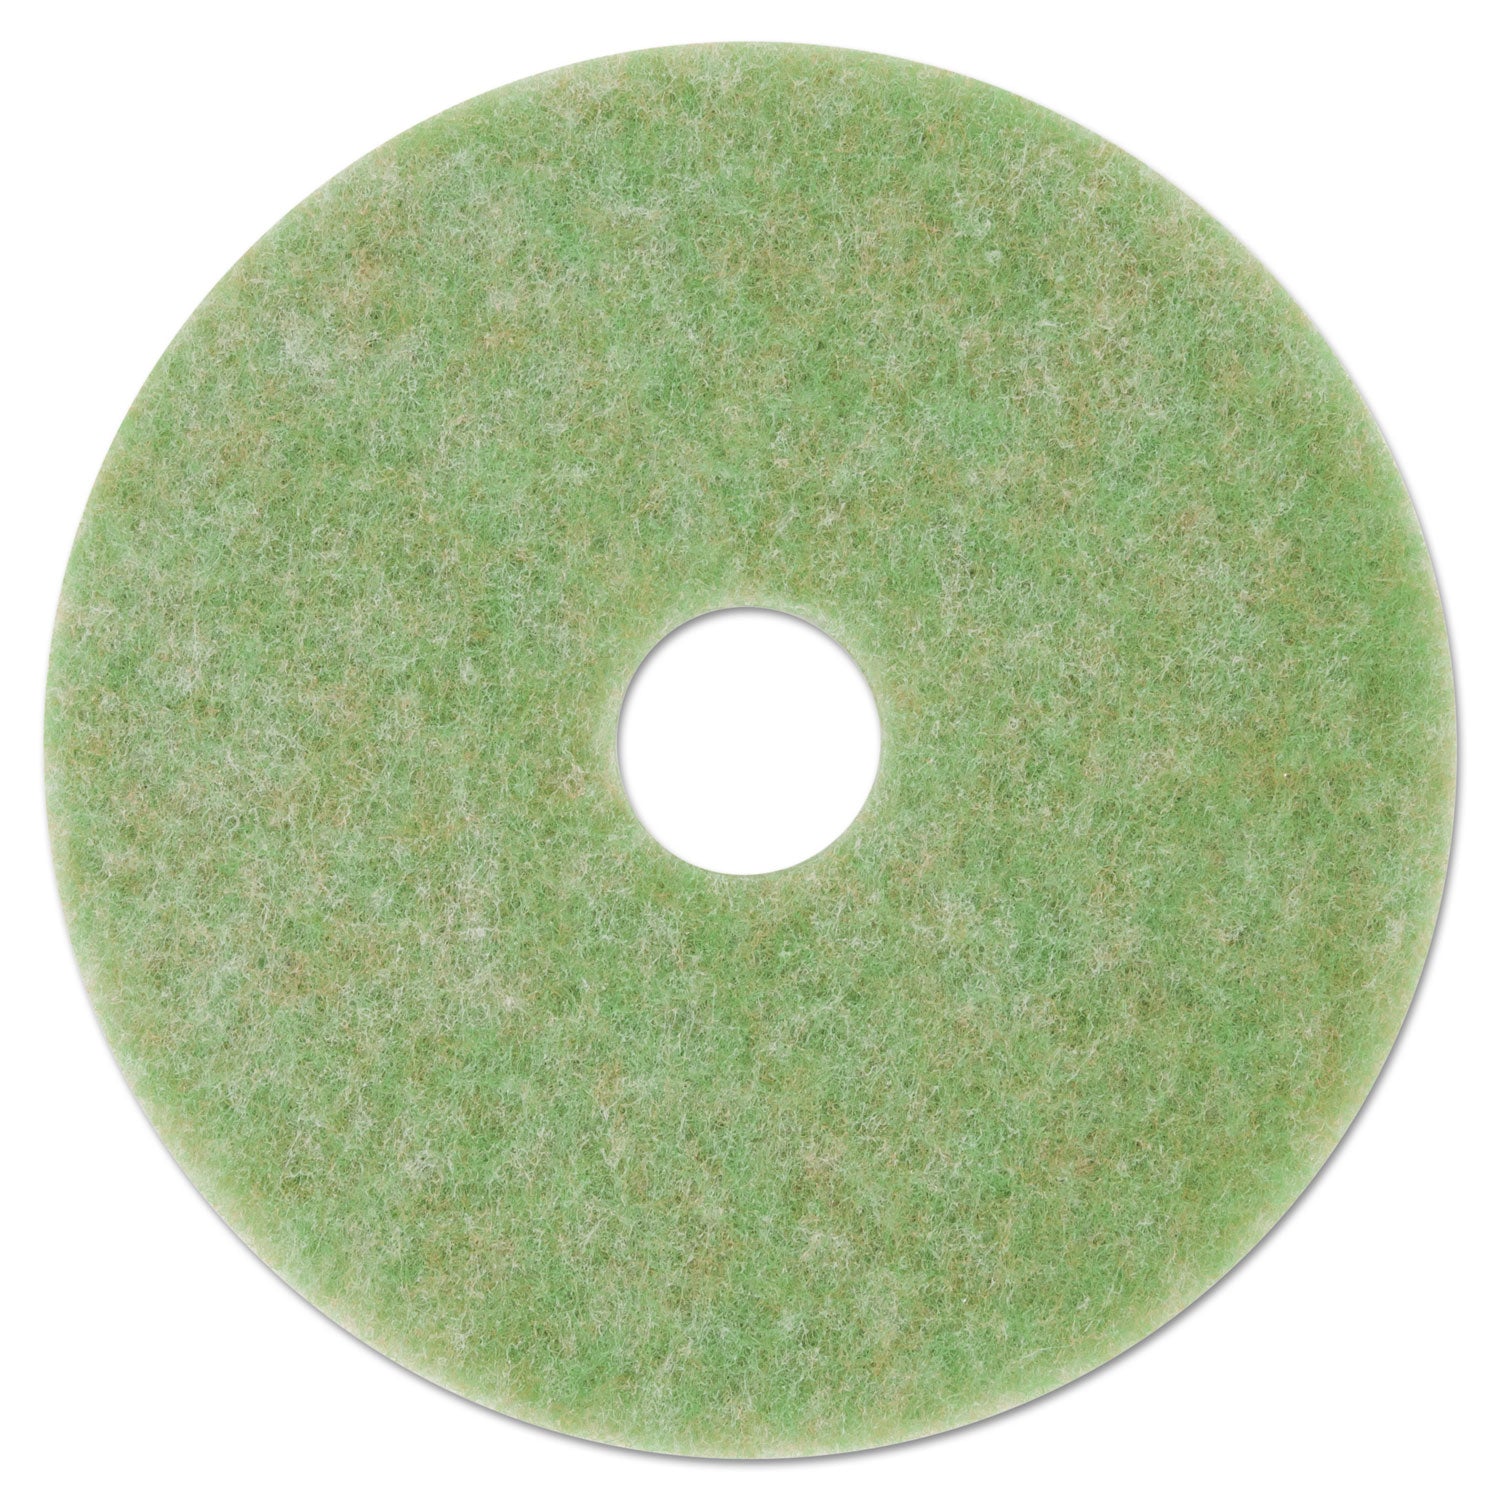 low-speed-topline-autoscrubber-floor-pads-5000-13-diameter-green-amber-5-carton_mmm18045 - 1